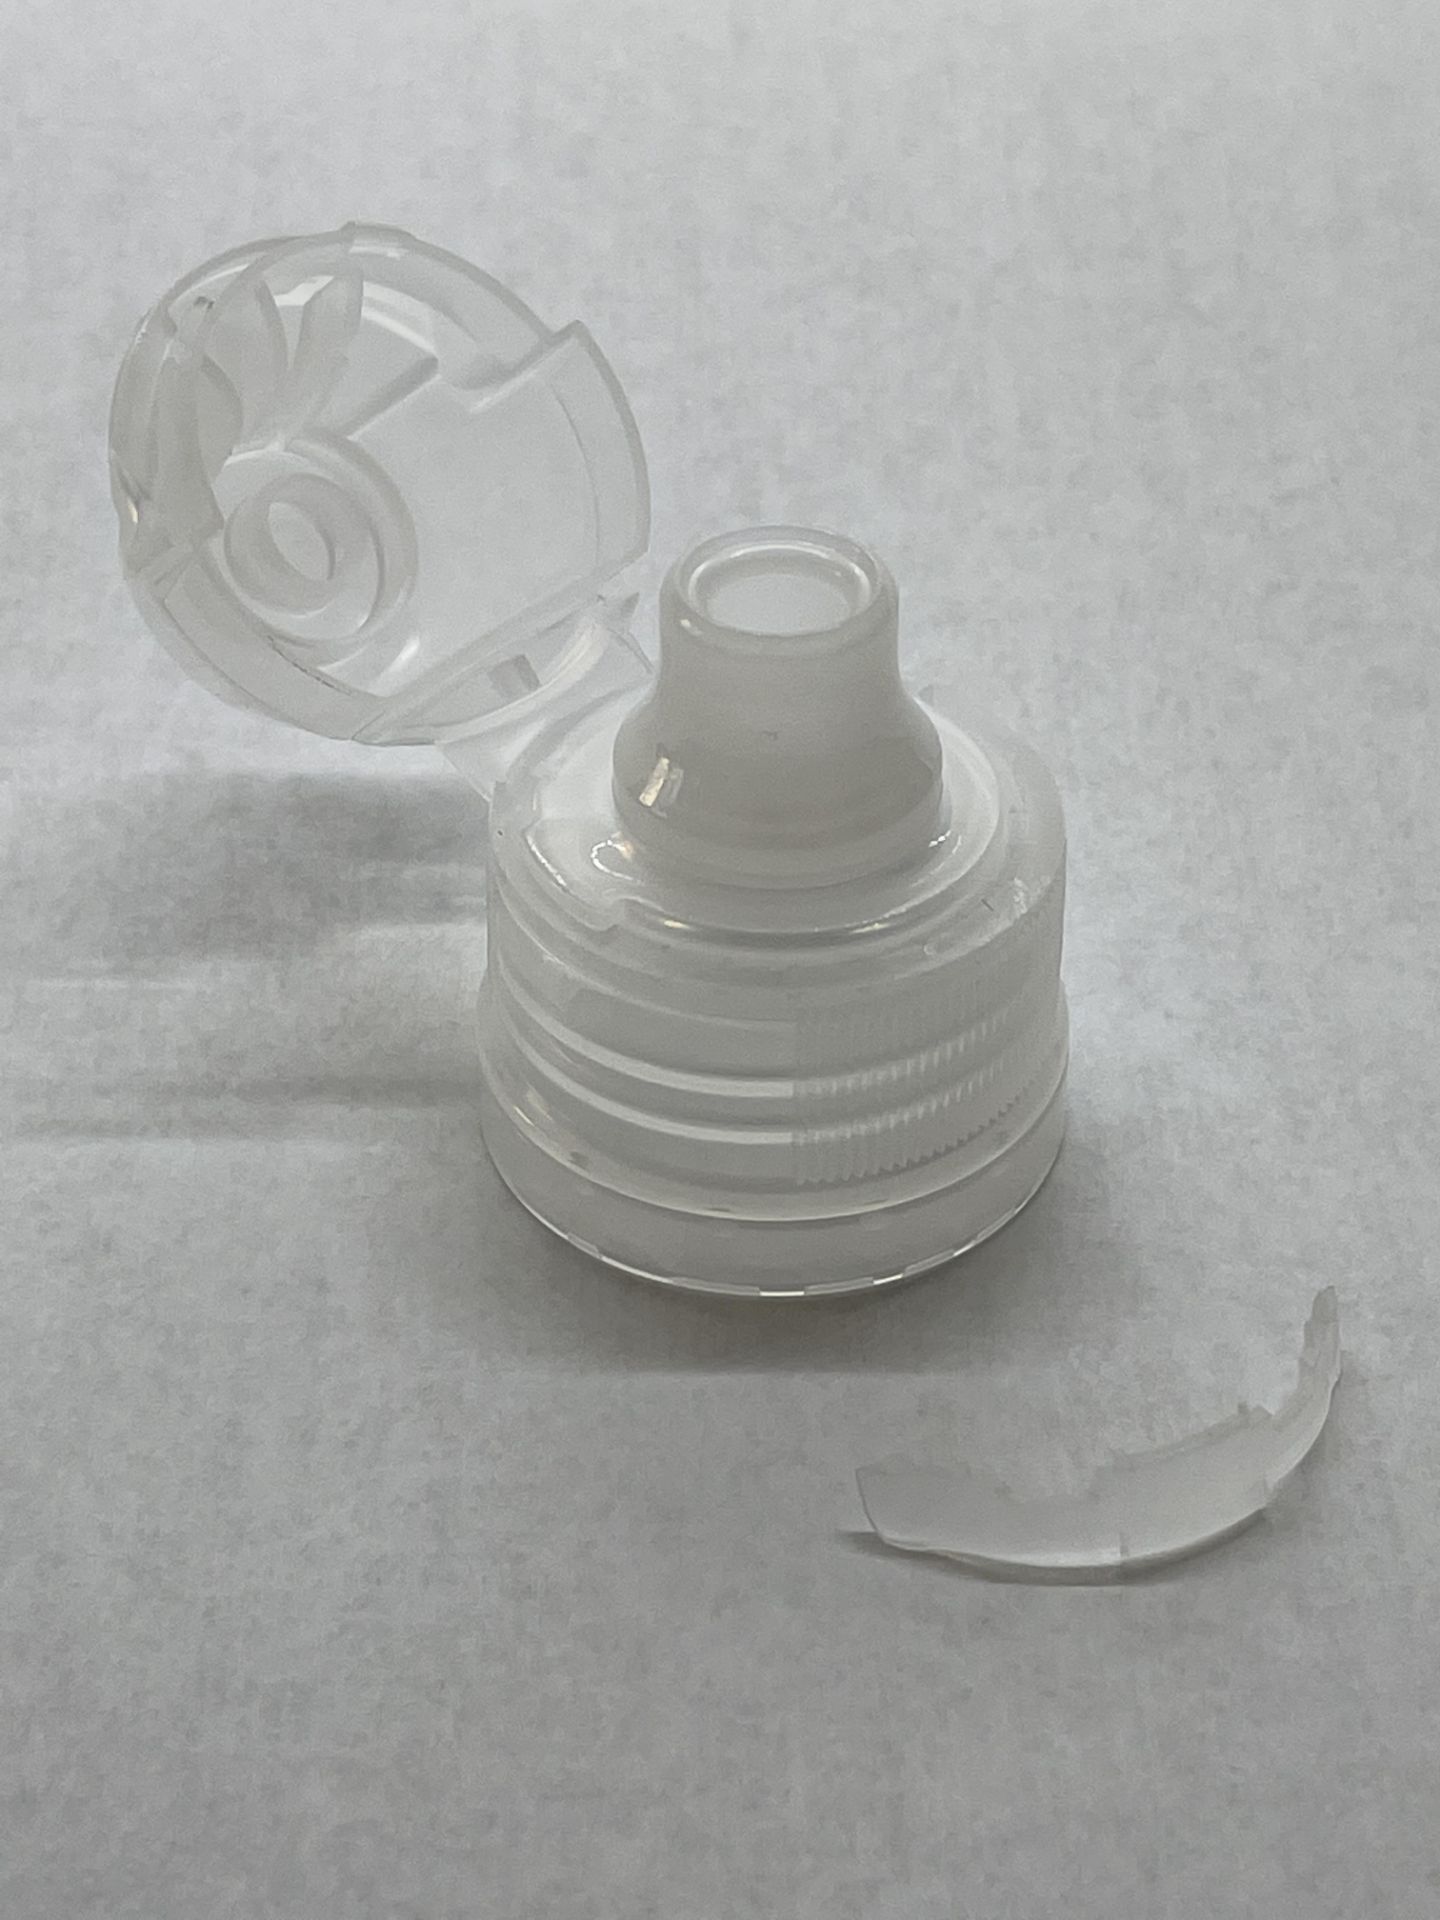 170,000 - Popular Aptar Water bottle sport cap for 16 oz bottle, 28-410 Threading - Image 2 of 6